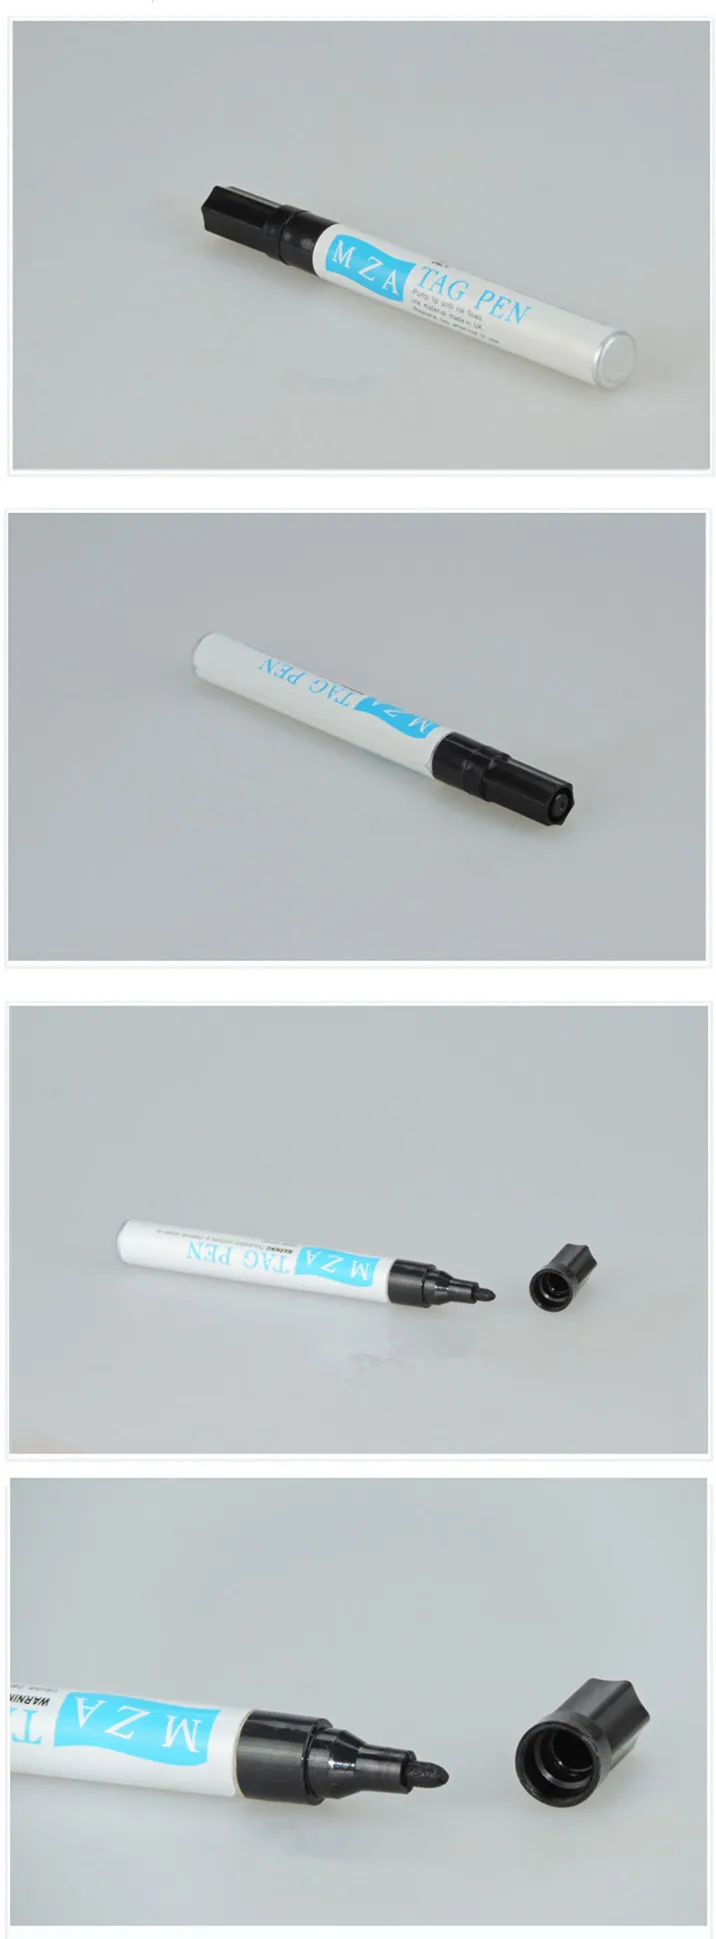 ear tag marker pen.jpg